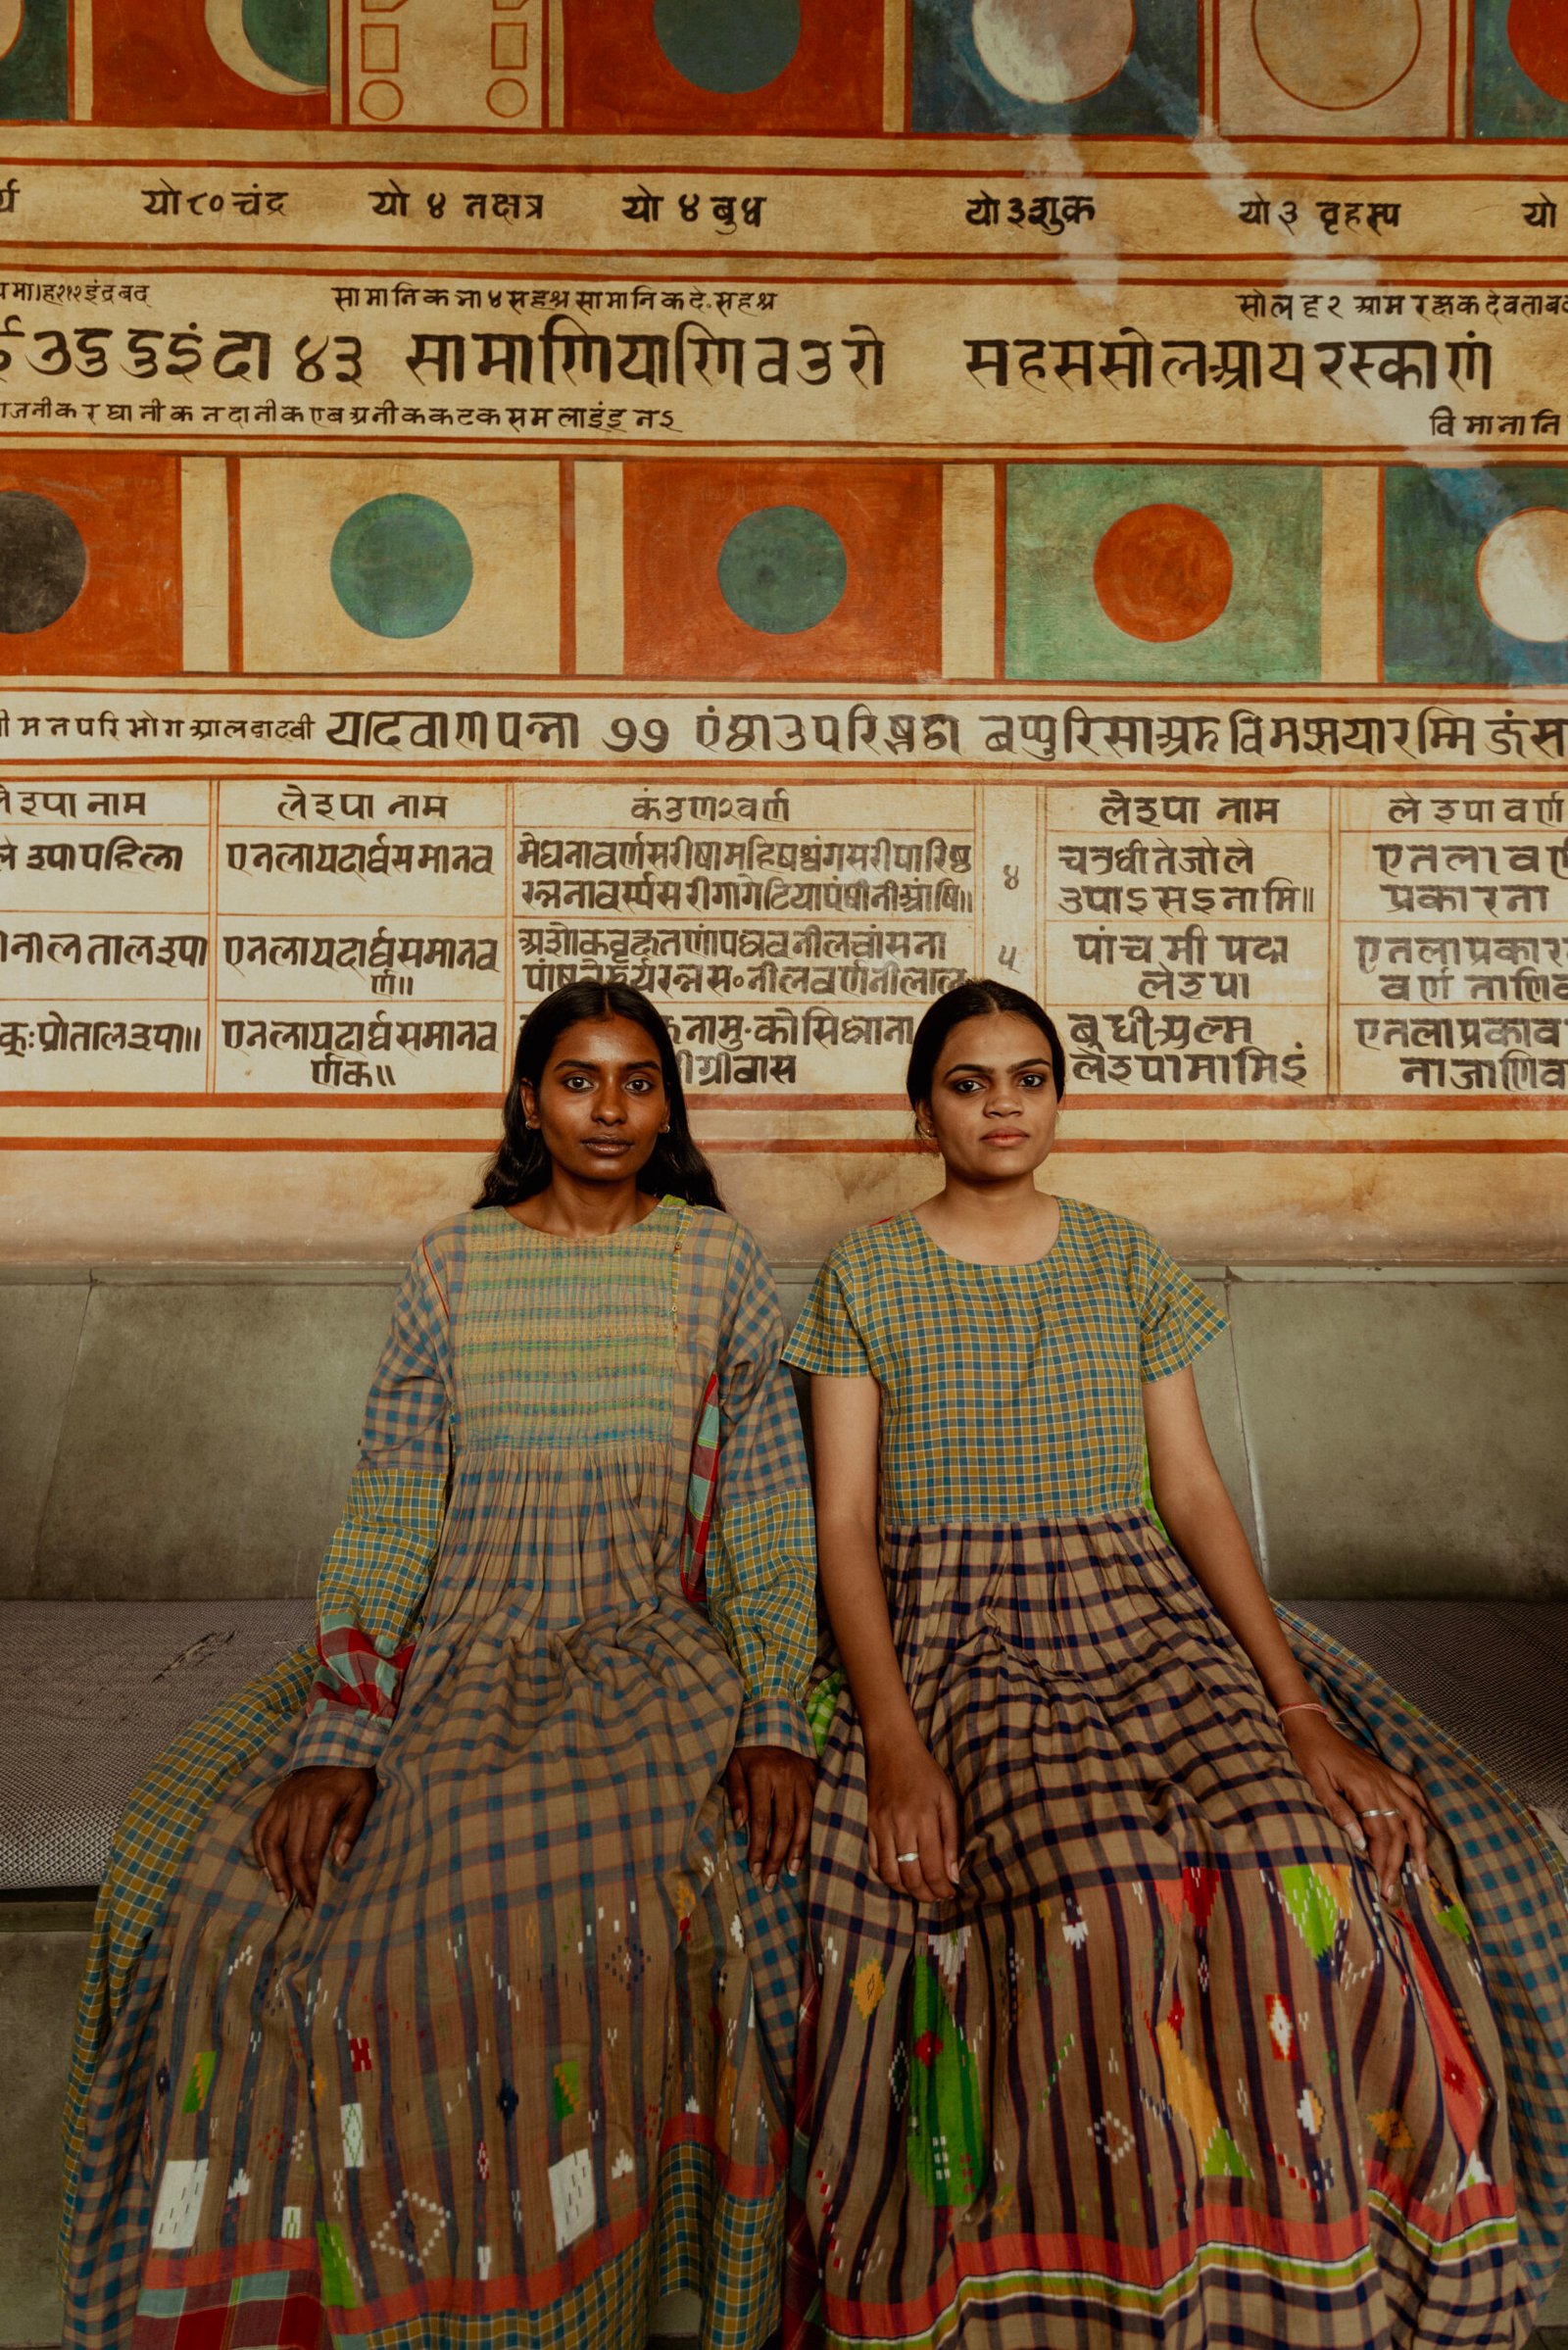 4,435 Uttar Pradesh Dress Images, Stock Photos, 3D objects, & Vectors |  Shutterstock